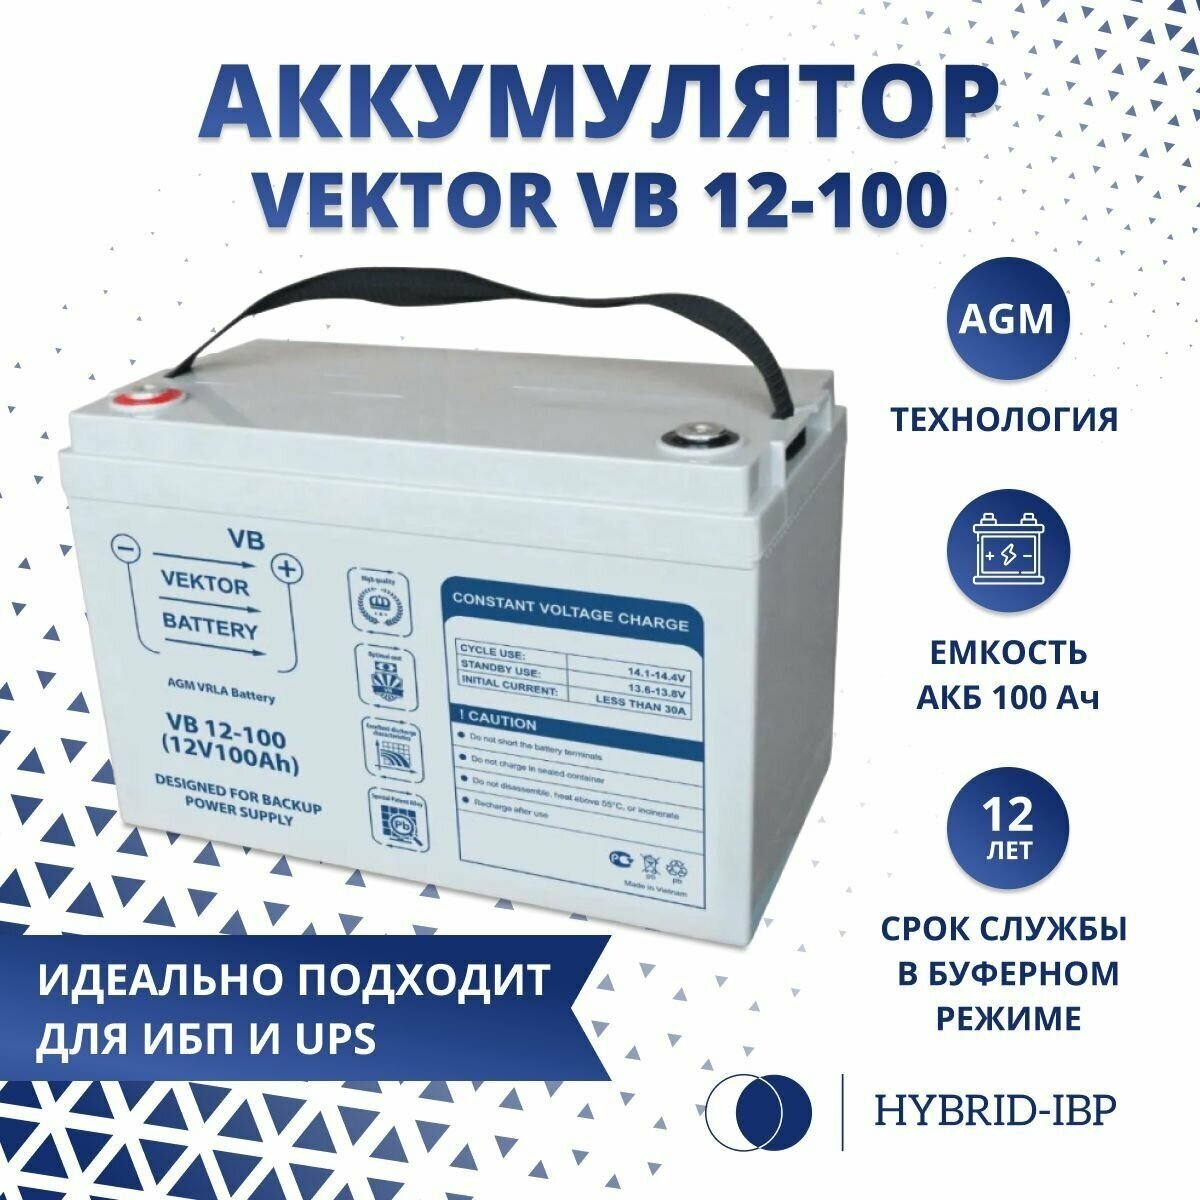 Аккумулятор Vektor VB 12-100